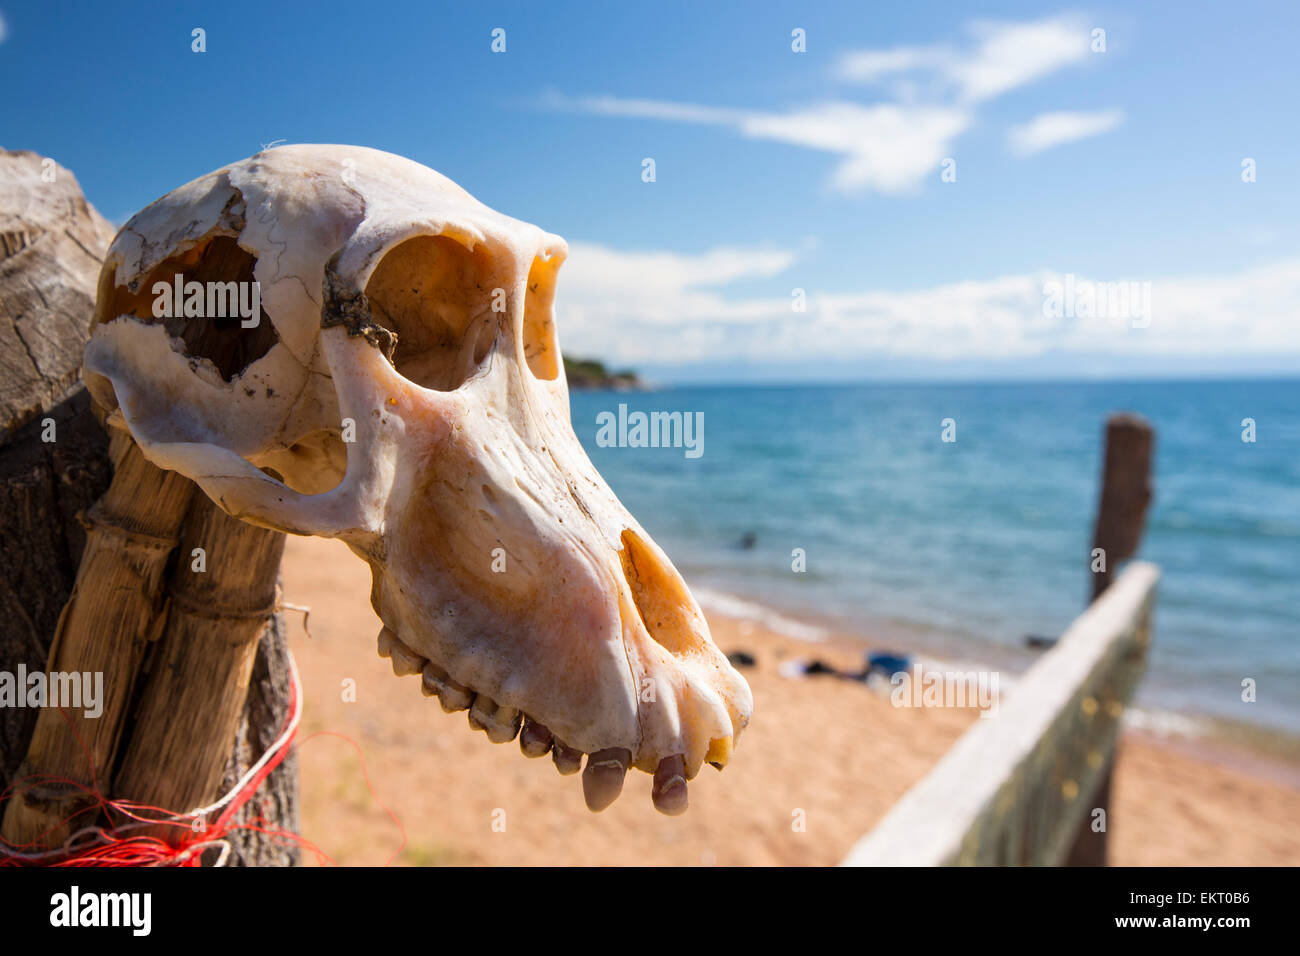 El cráneo de un mono en un letrero para el Parque Nacional del lago Malaui, el primer parque nacional de agua dulce en el mundo, al cabo Maclear en las orillas del Lago Malawi, Malawi, África. Foto de stock